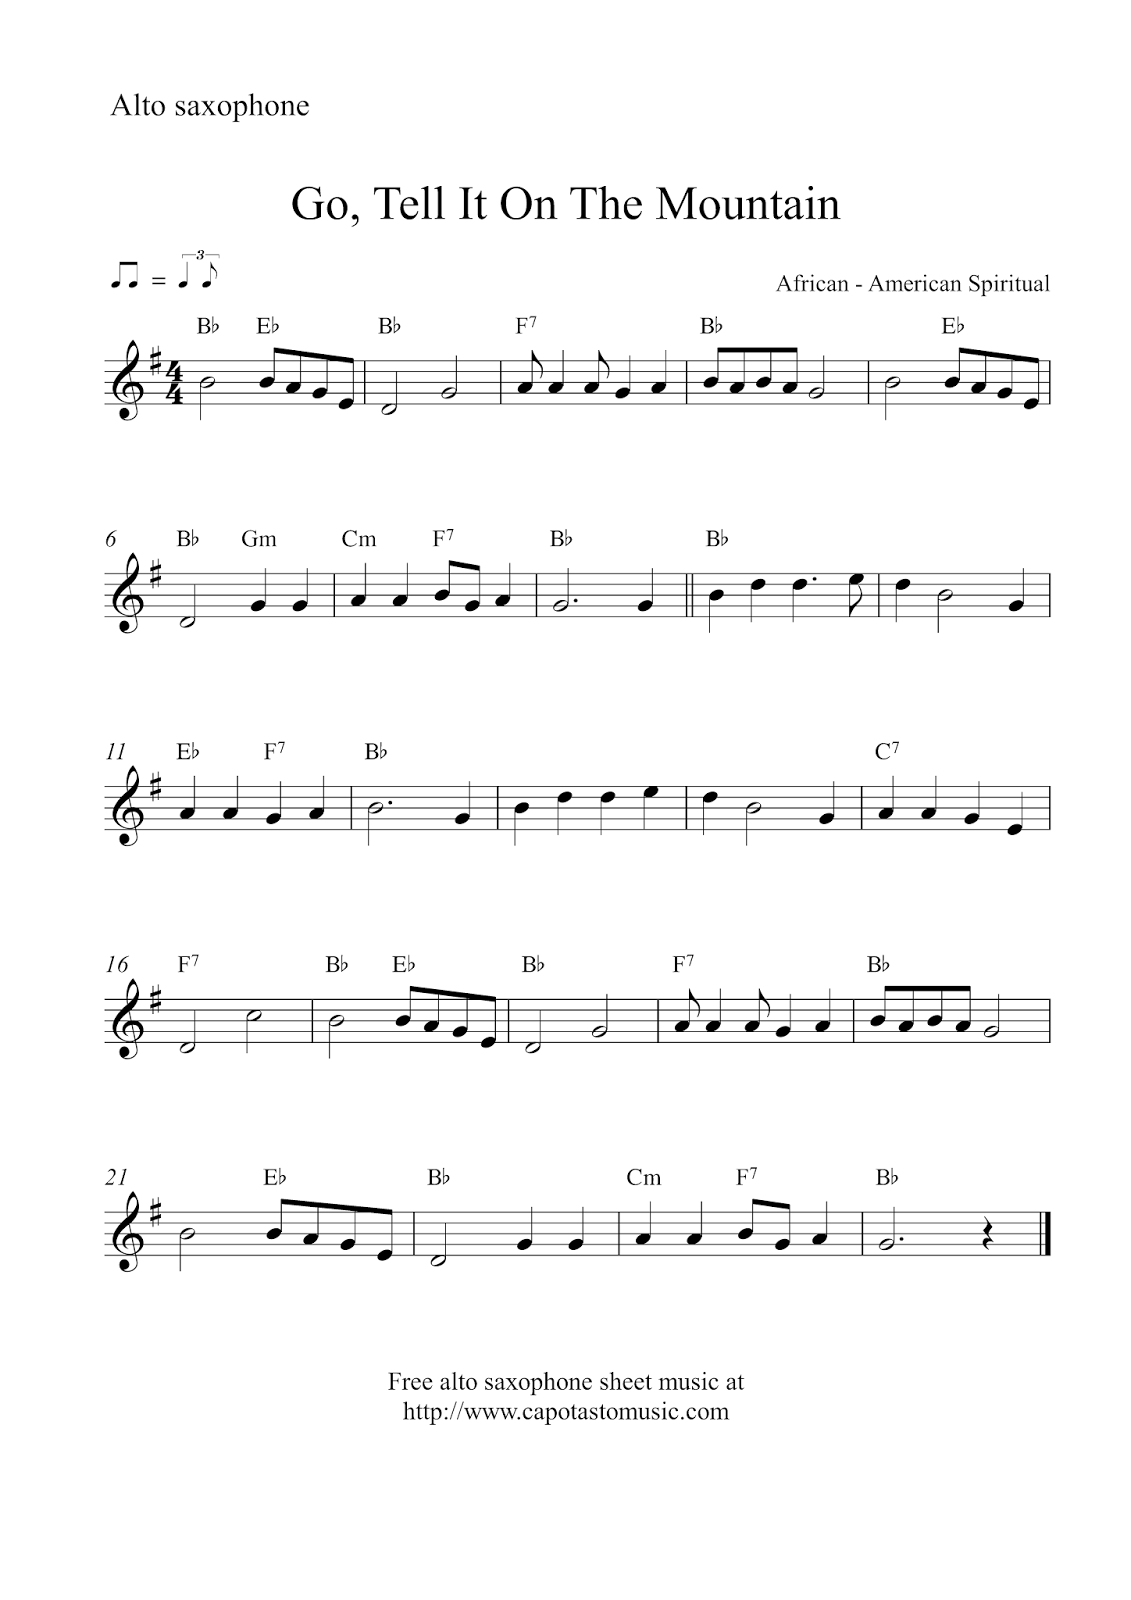 Free Christmas alto saxophone sheet music - Go, Tell It On The Mountain